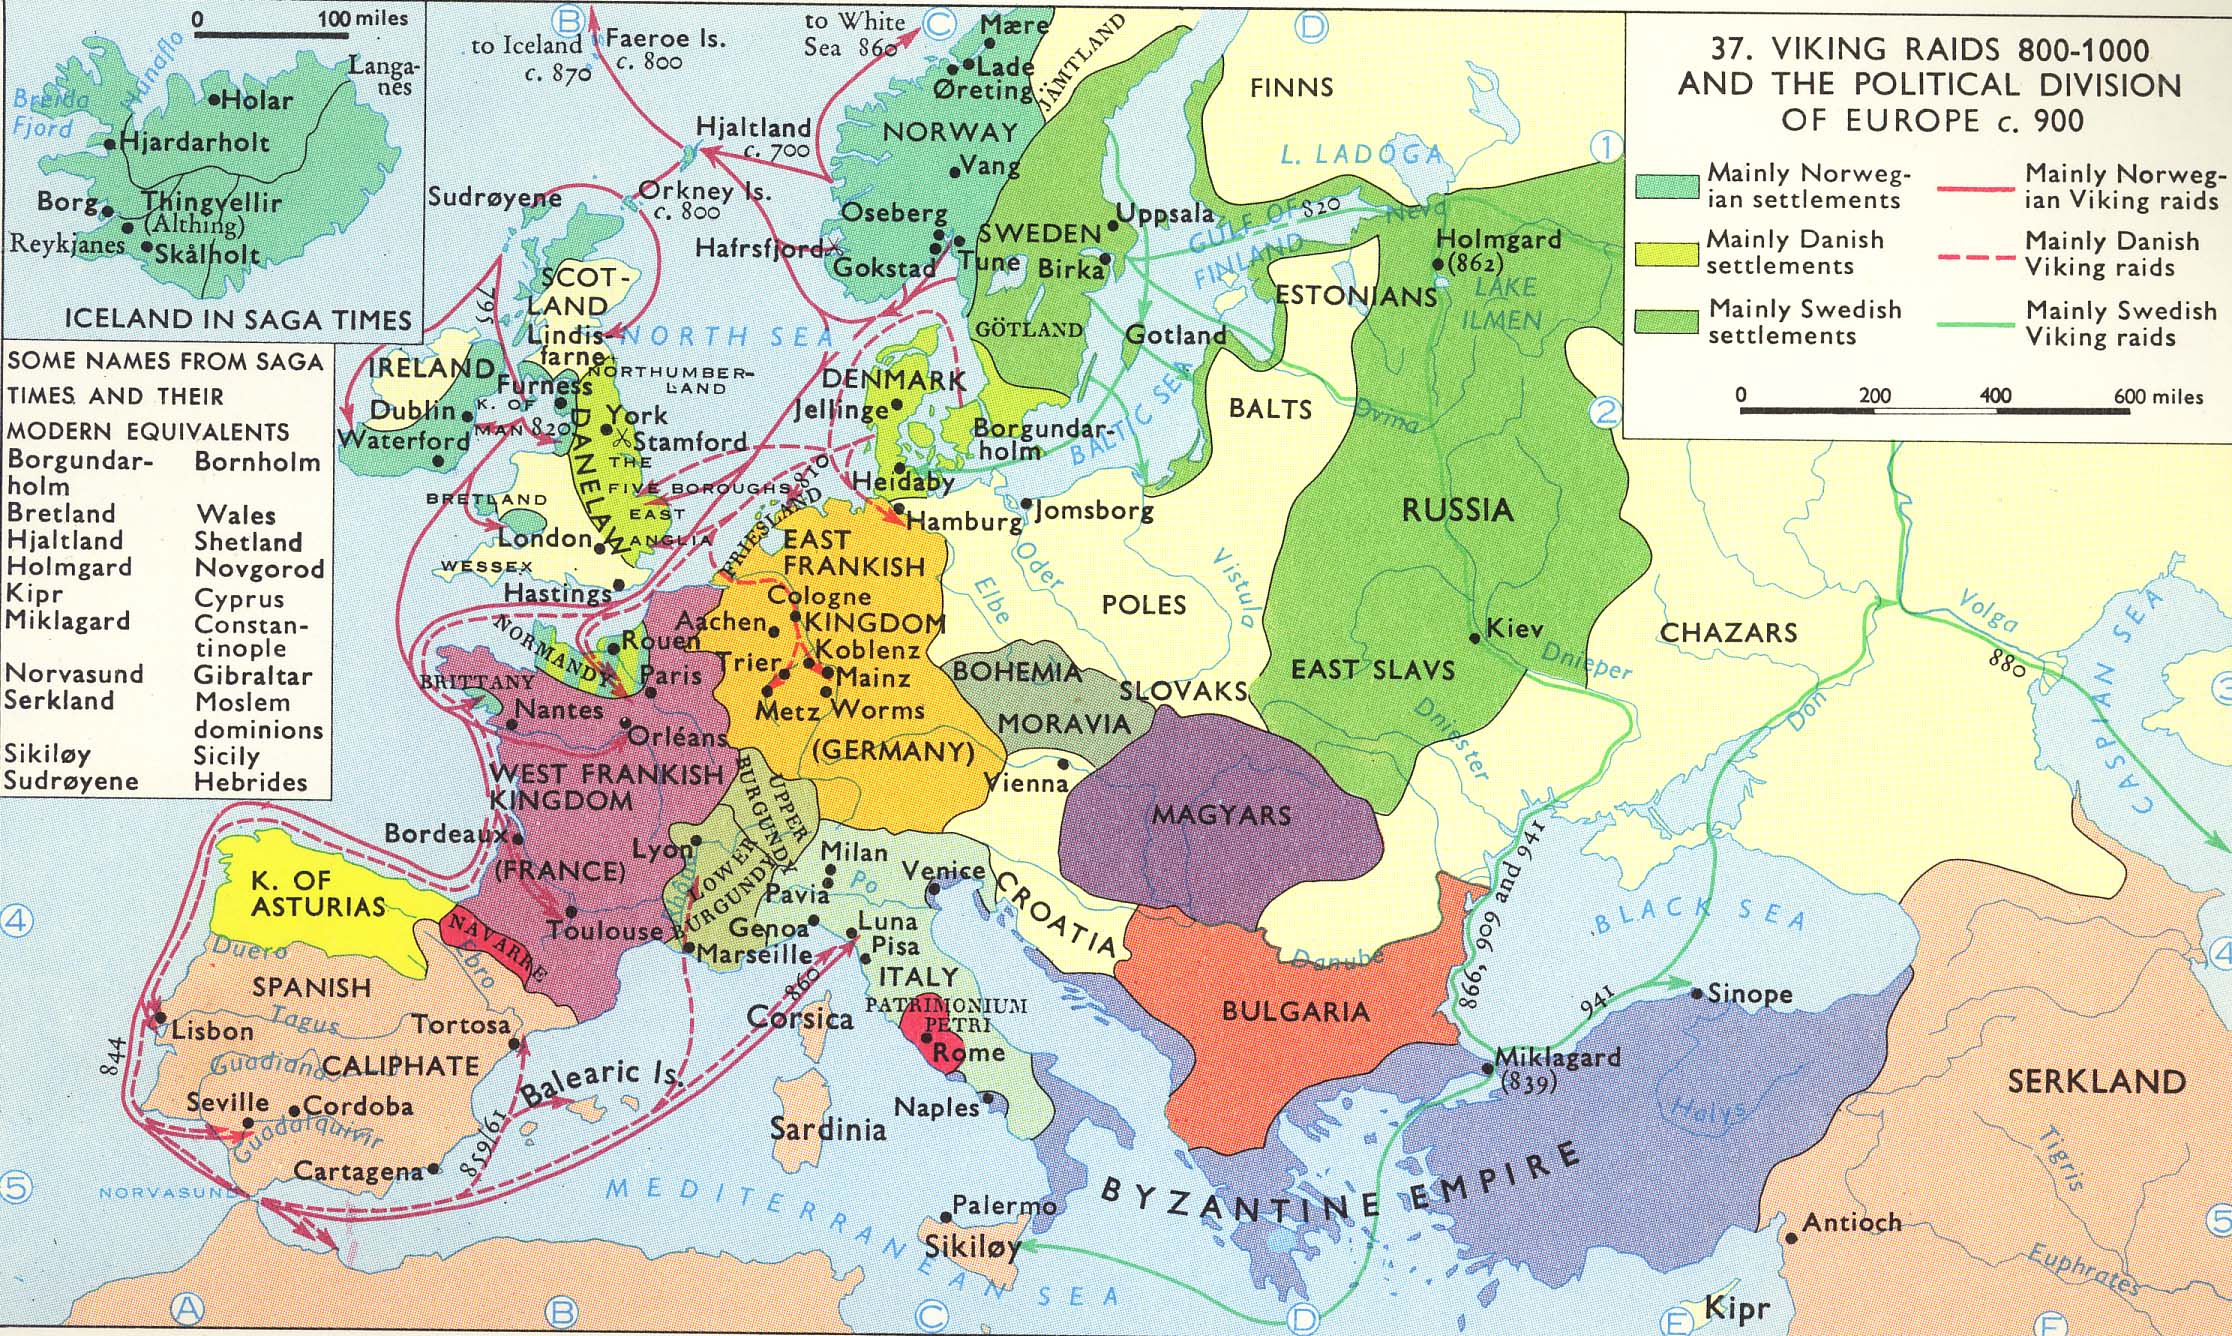 Western Europe and Byzantium, c.500-1000 CE